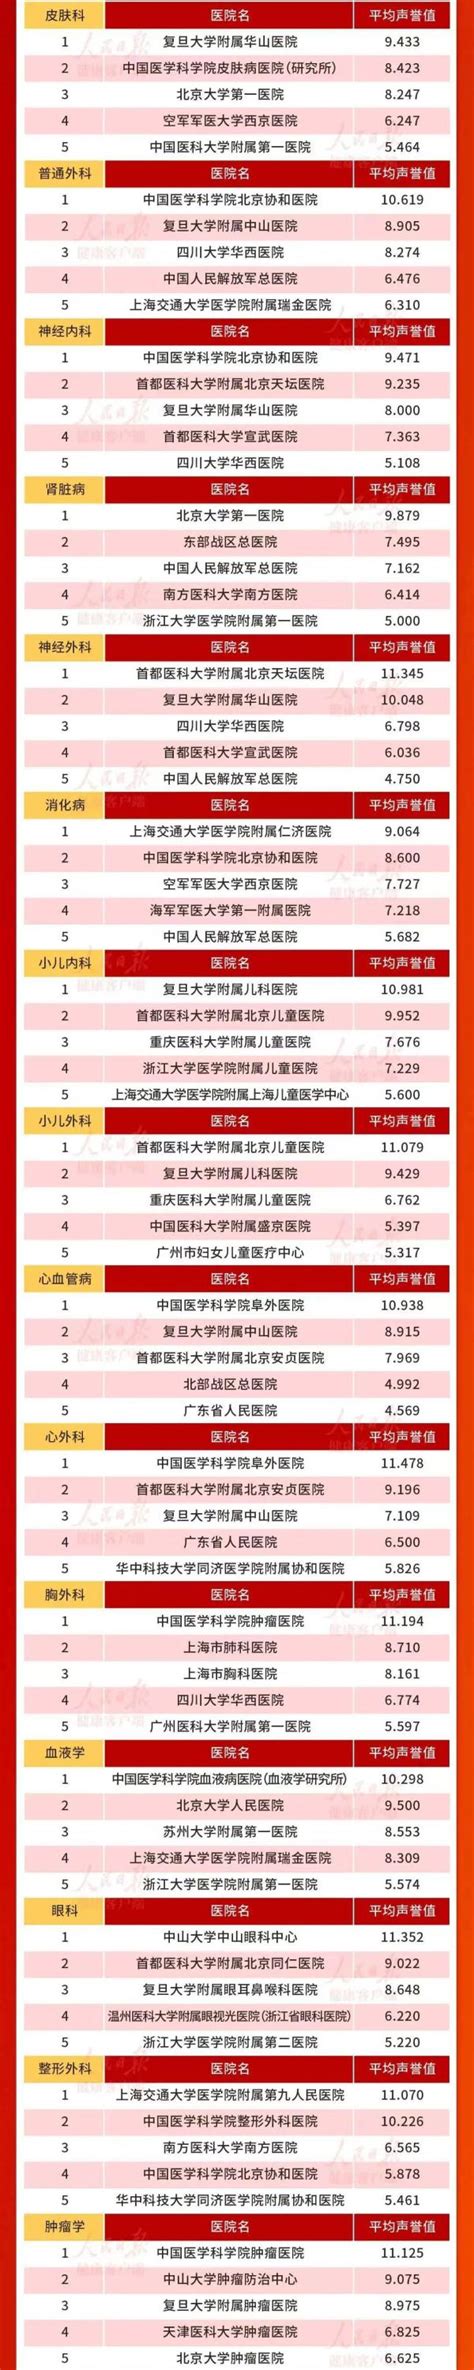 复旦中国医院排行榜发布，协和、华西、301、中山、瑞金列前五，竞逐激烈前后名仅差零点零几分